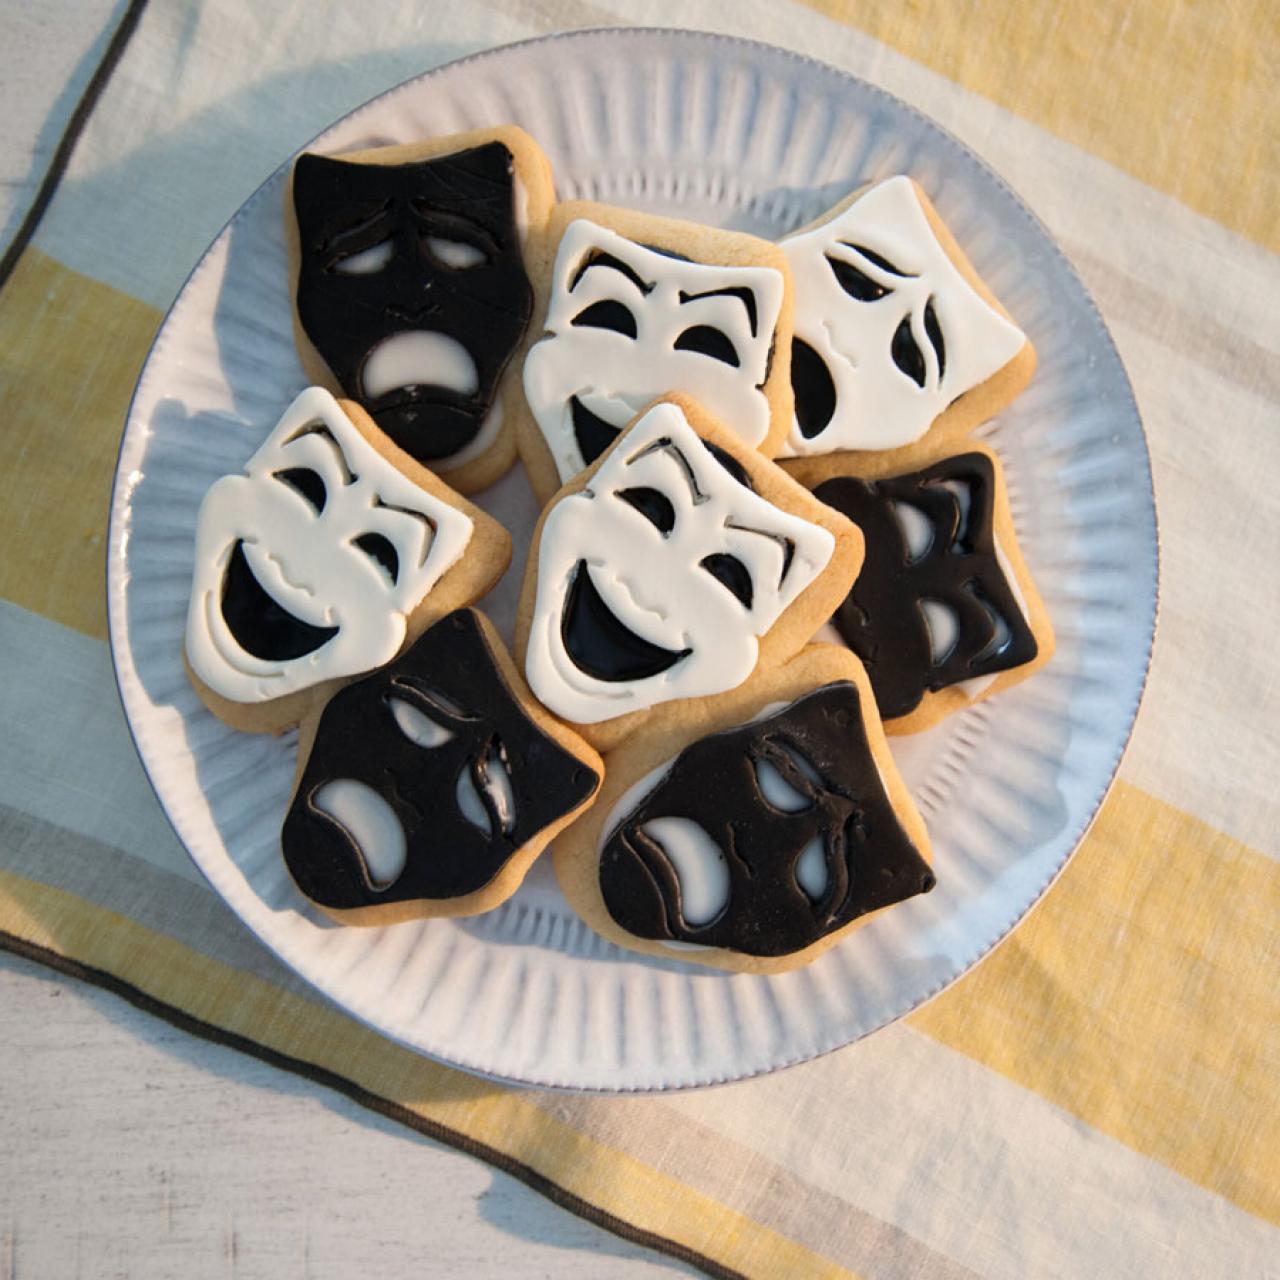 Blackboard Butter Cookies with Edible Chalk Recipe, Trisha Yearwood